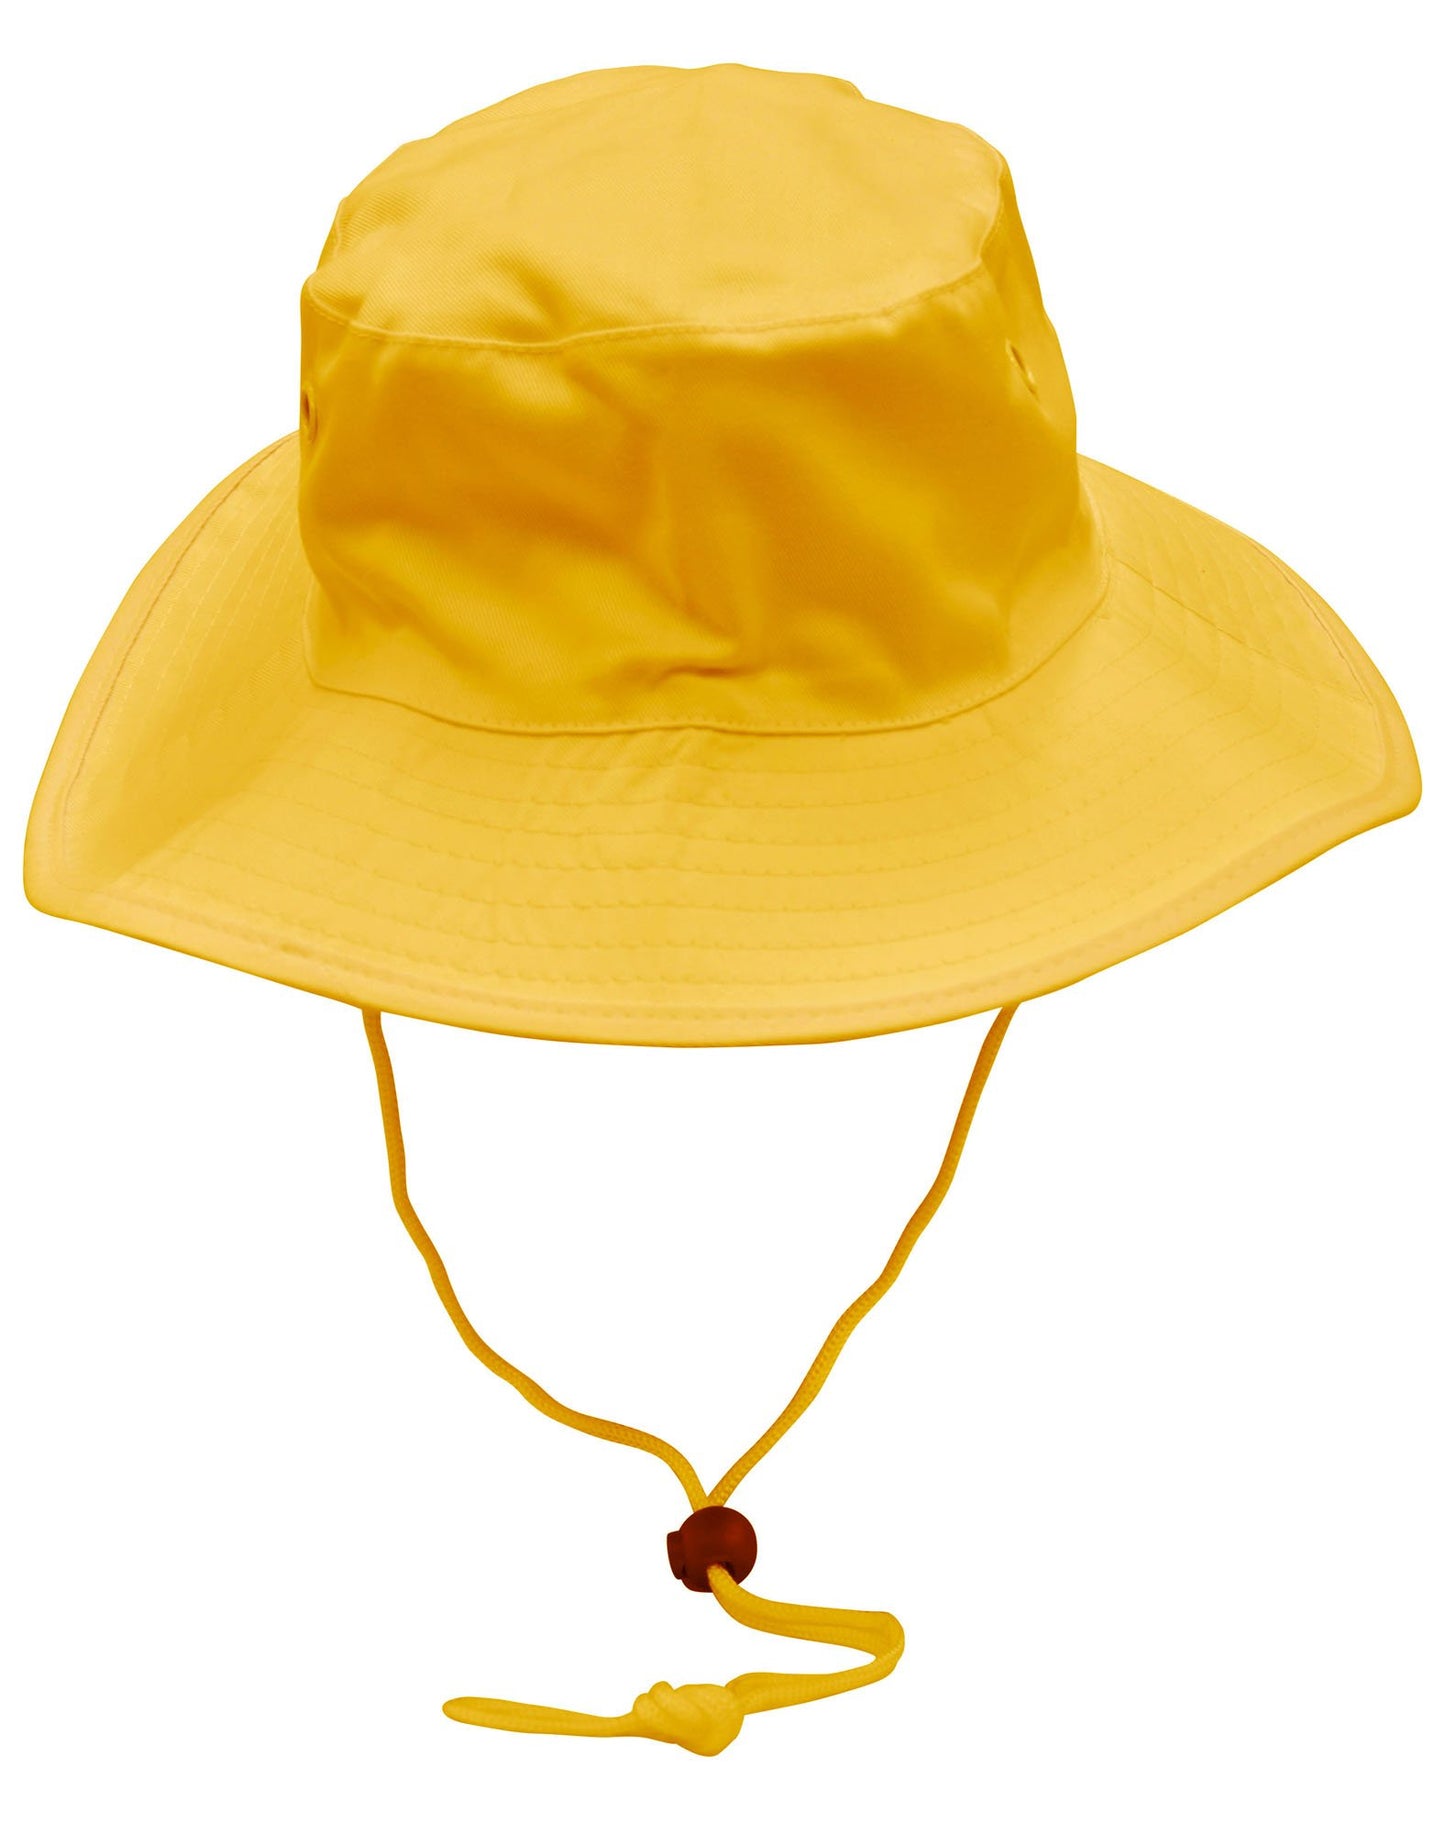 H1035 Surf Hat With Break-away Strap - Star Uniforms Australia